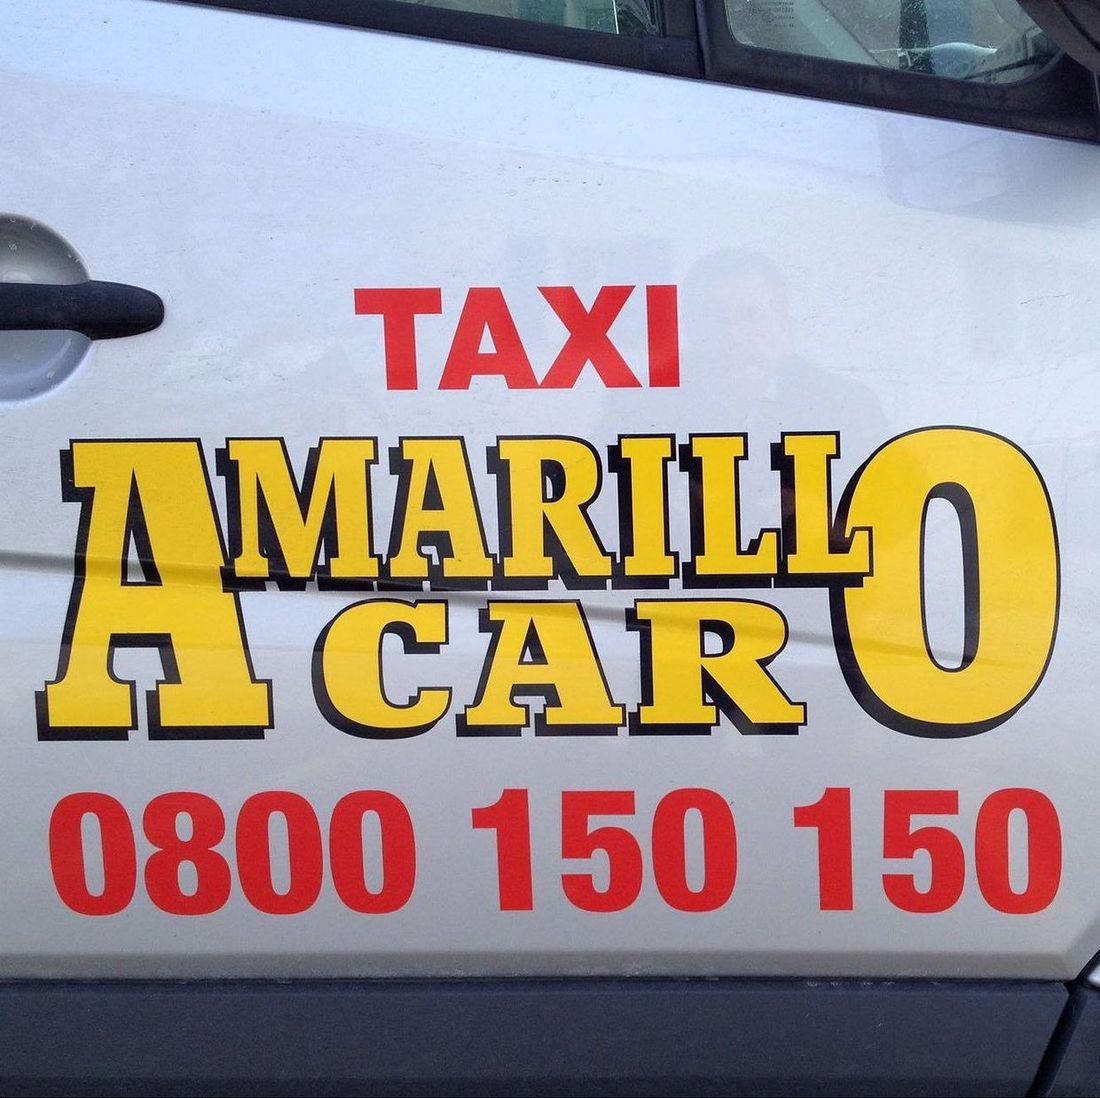 Taxi - Taxi Amarillo